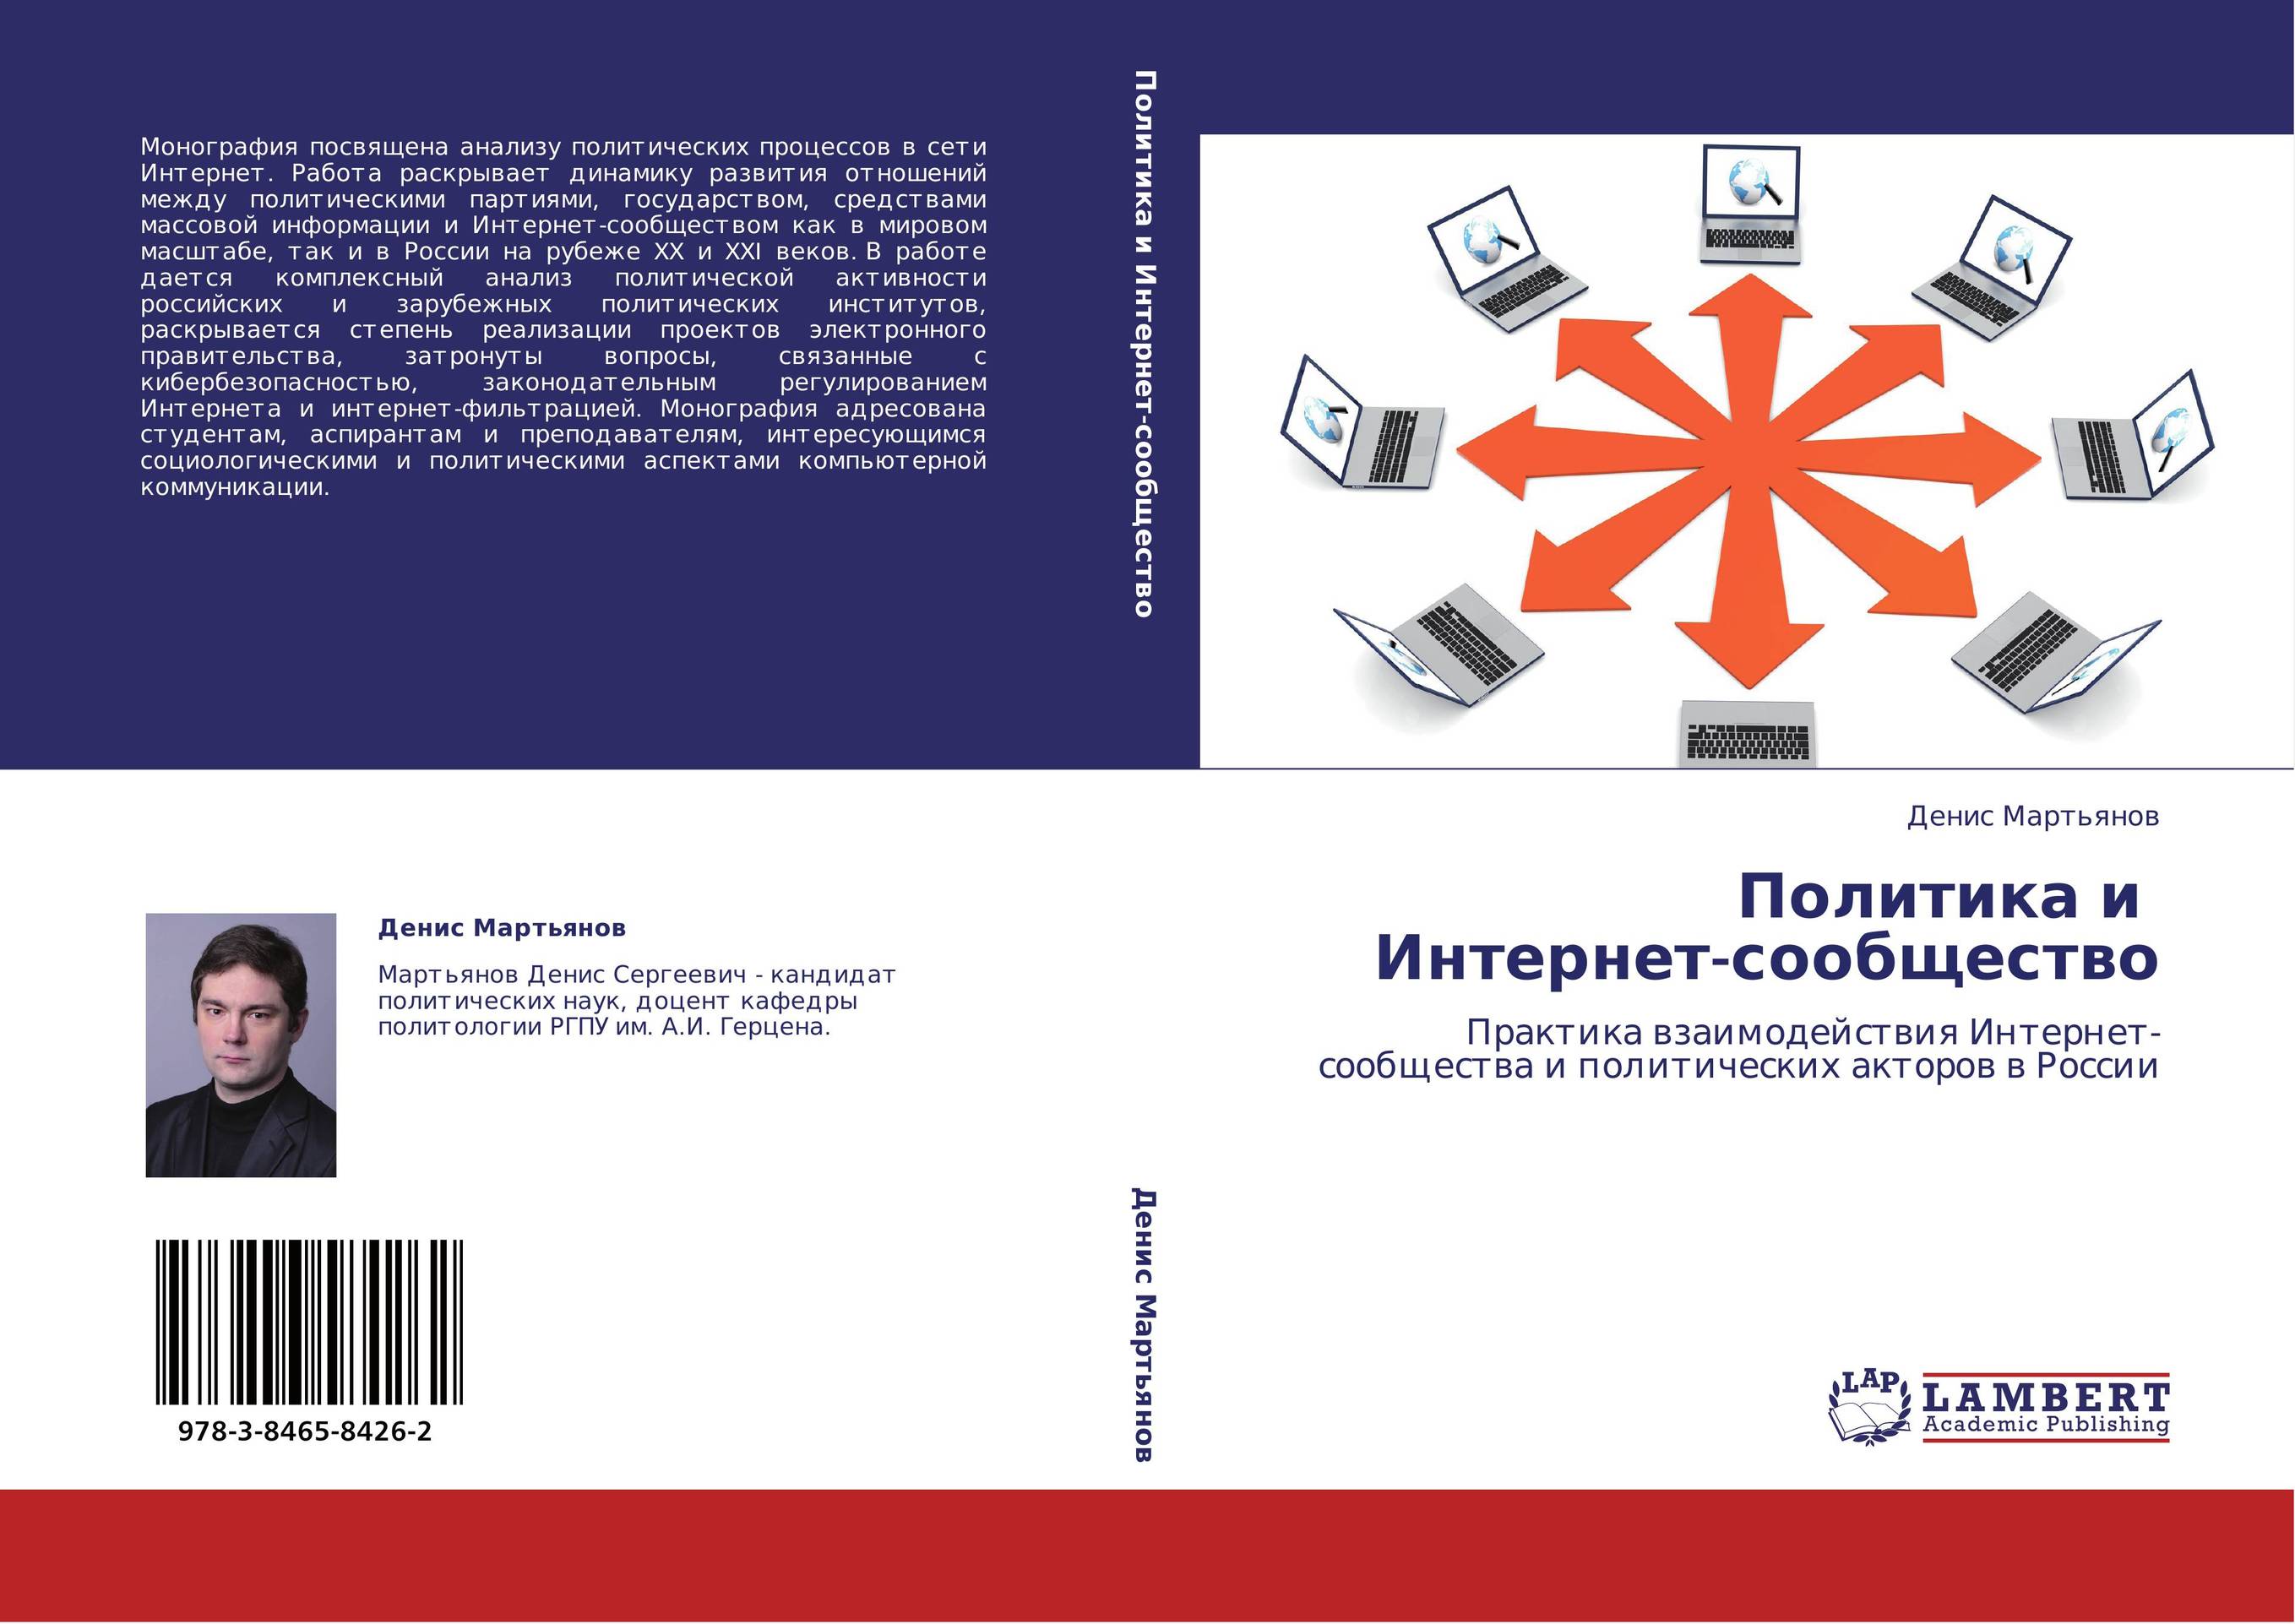 Политика и   Интернет-сообщество. Практика взаимодействия Интернет-сообщества и политических акторов в России.